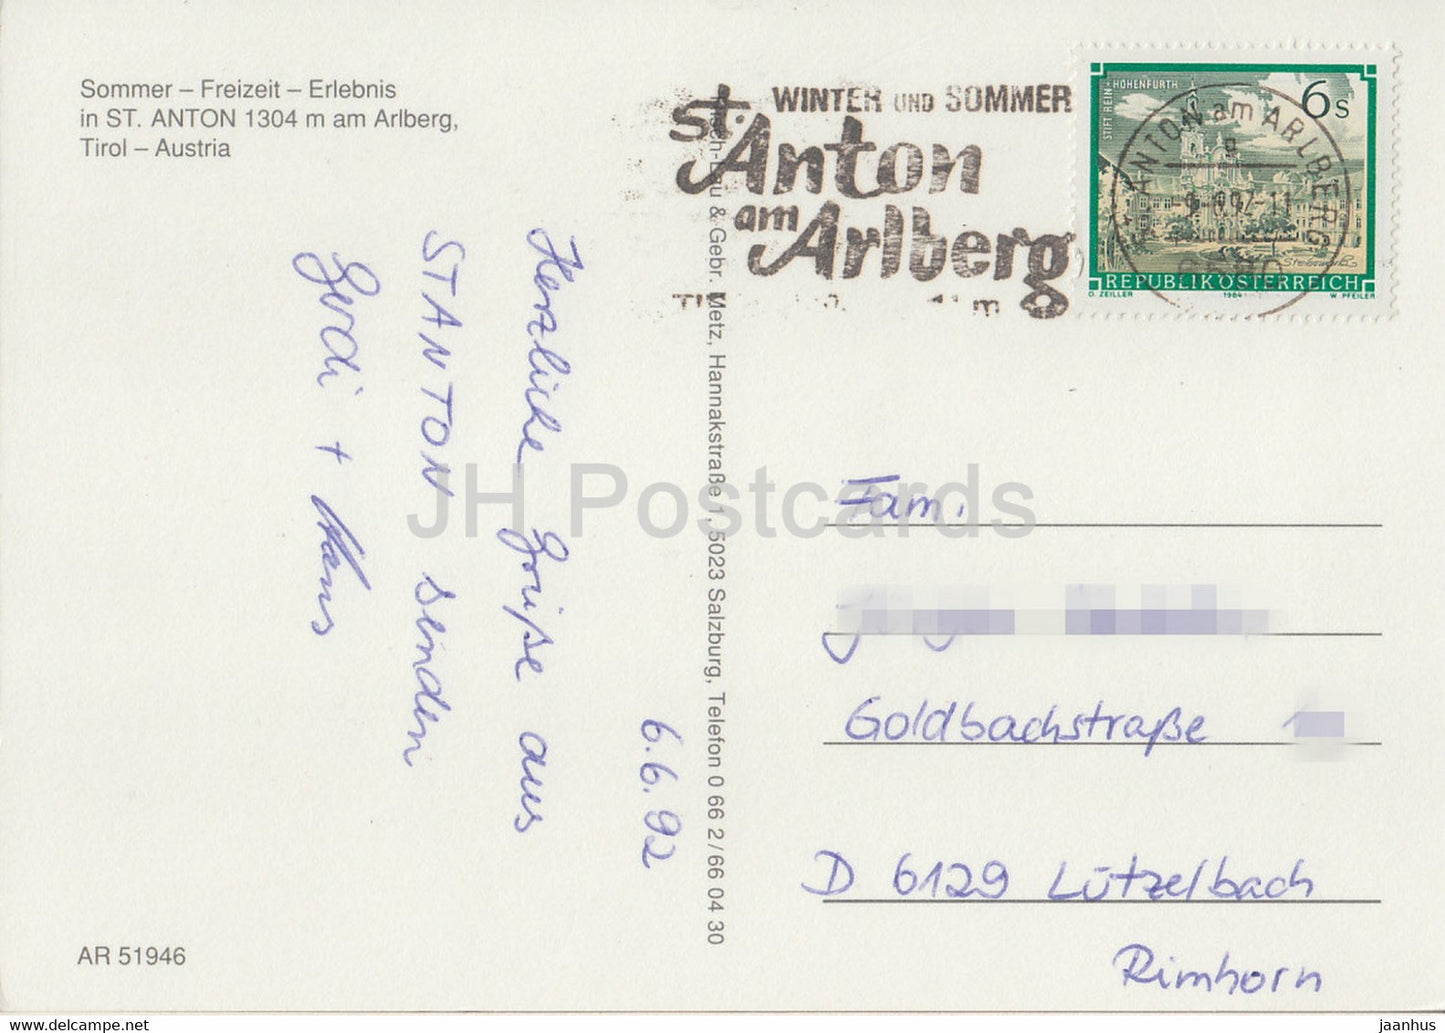 St Anton 1304 m im Arlberg - Tirol - church - Sommer - Freizeit - Erlebnis - multiview - 1992 - Austria - used